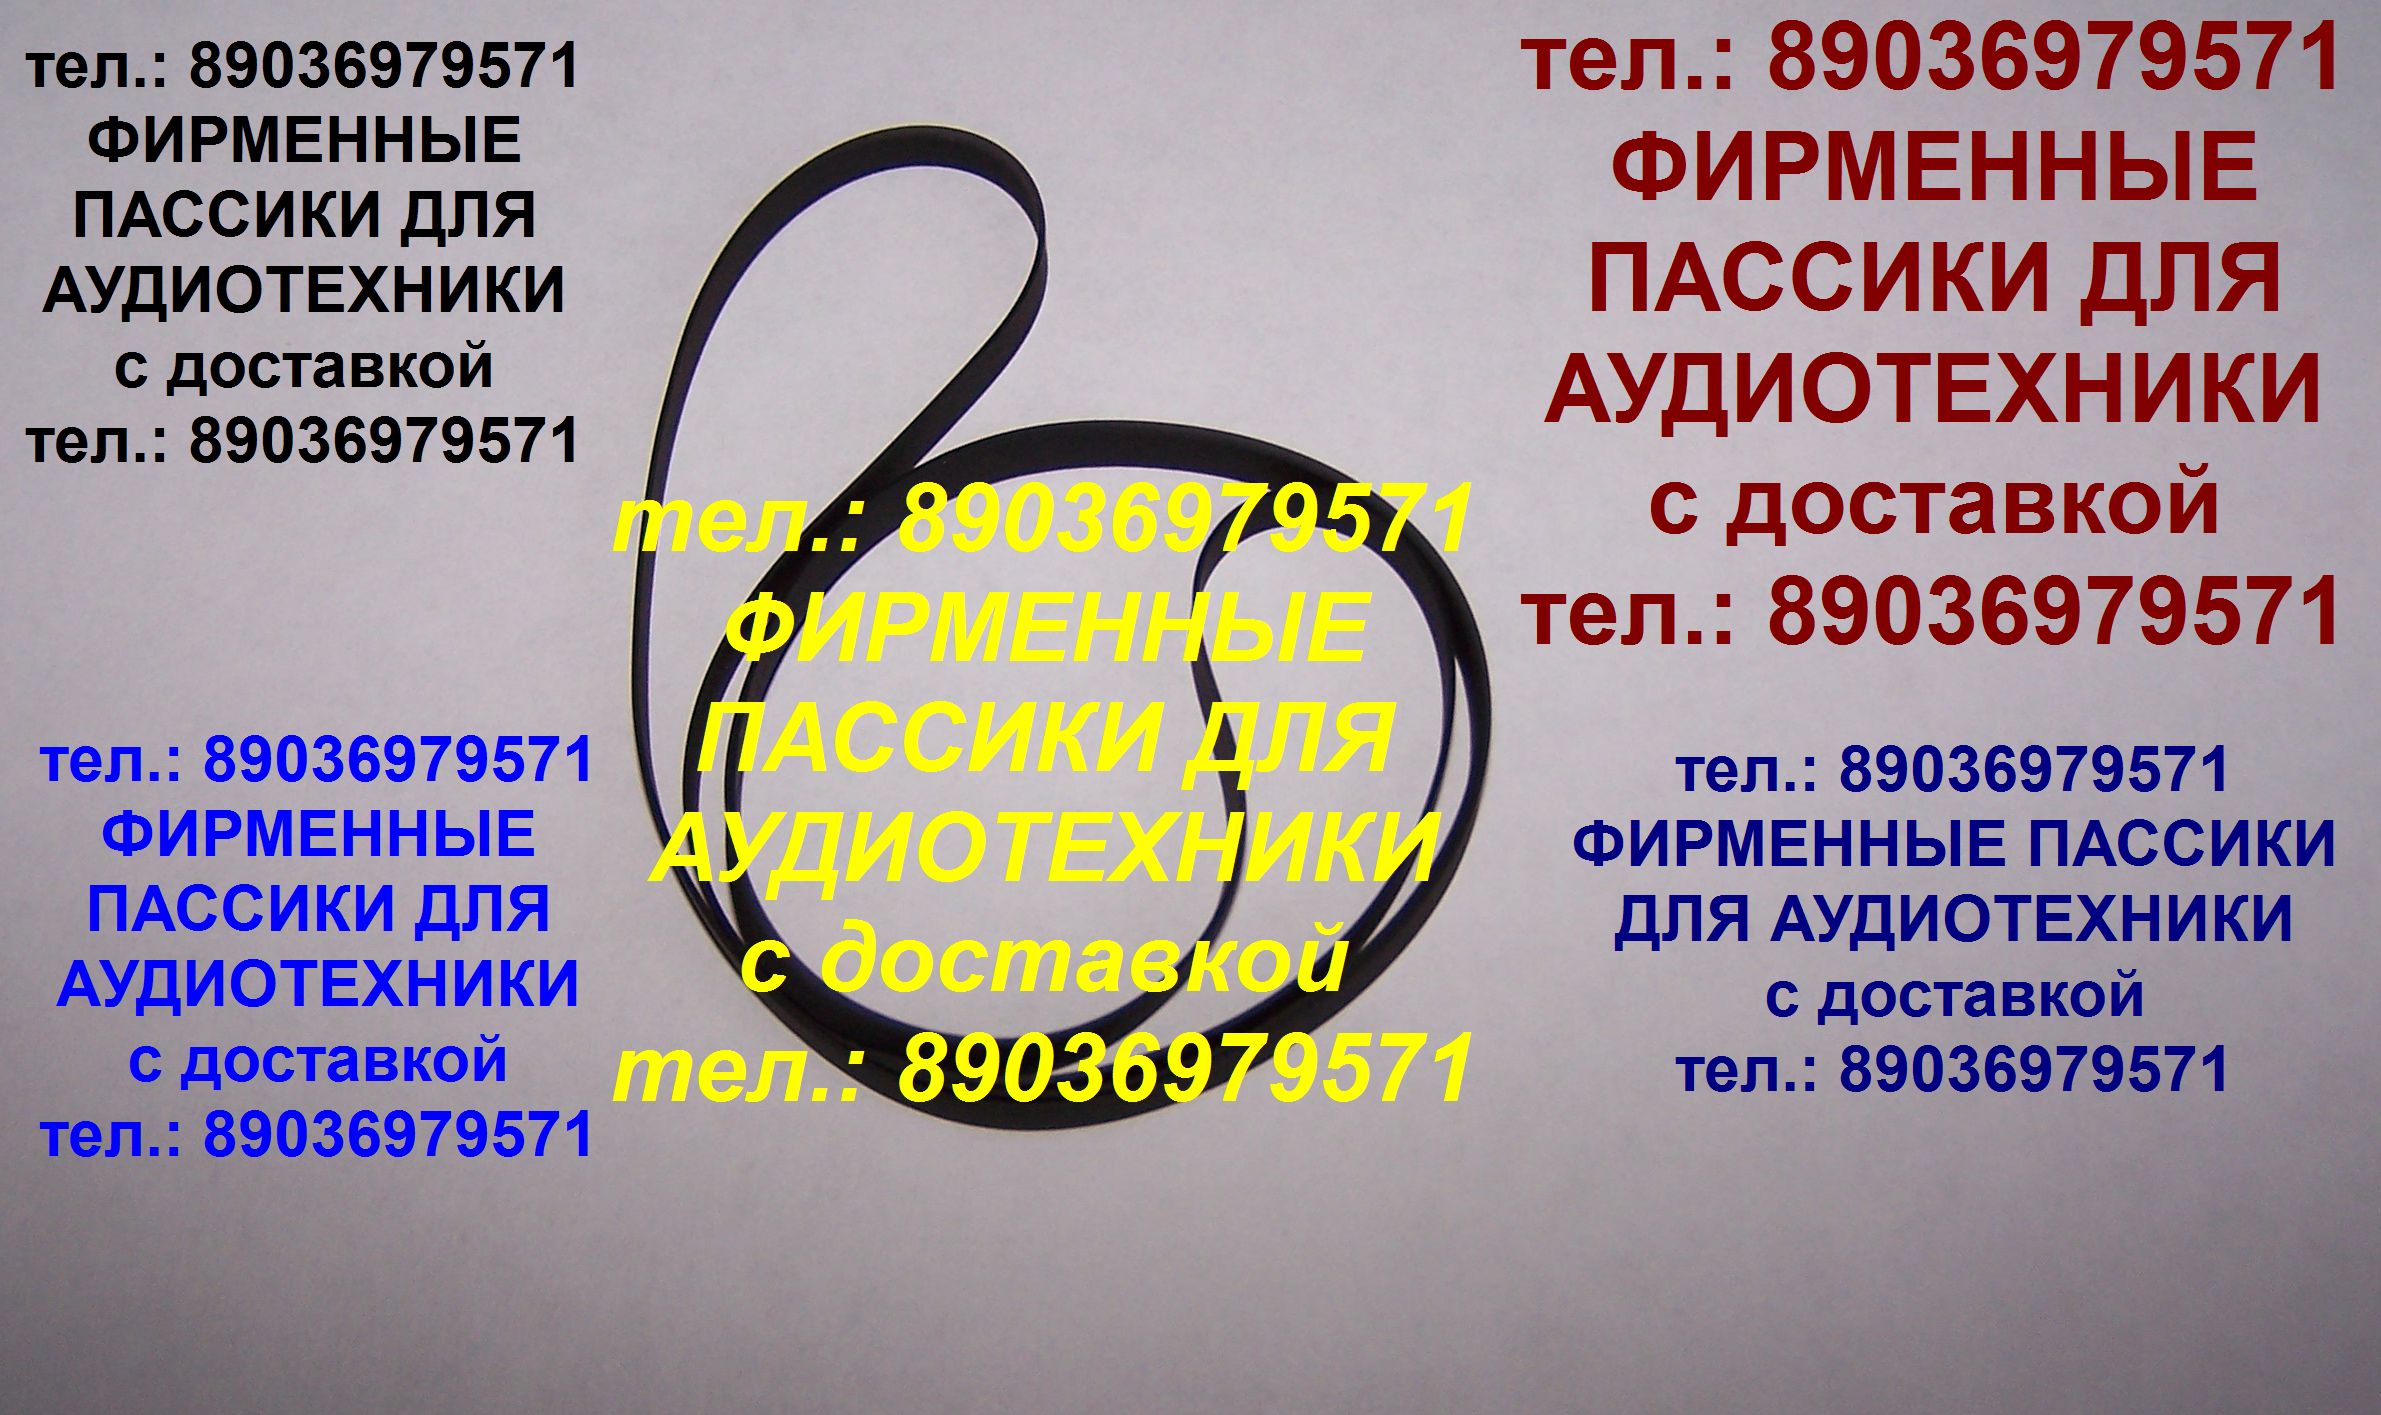 пассик для Sharp RP-10 ремень пасик фирменный Шарп RP10 в городе Москва, фото 1, телефон продавца: +7 (903) 697-95-71